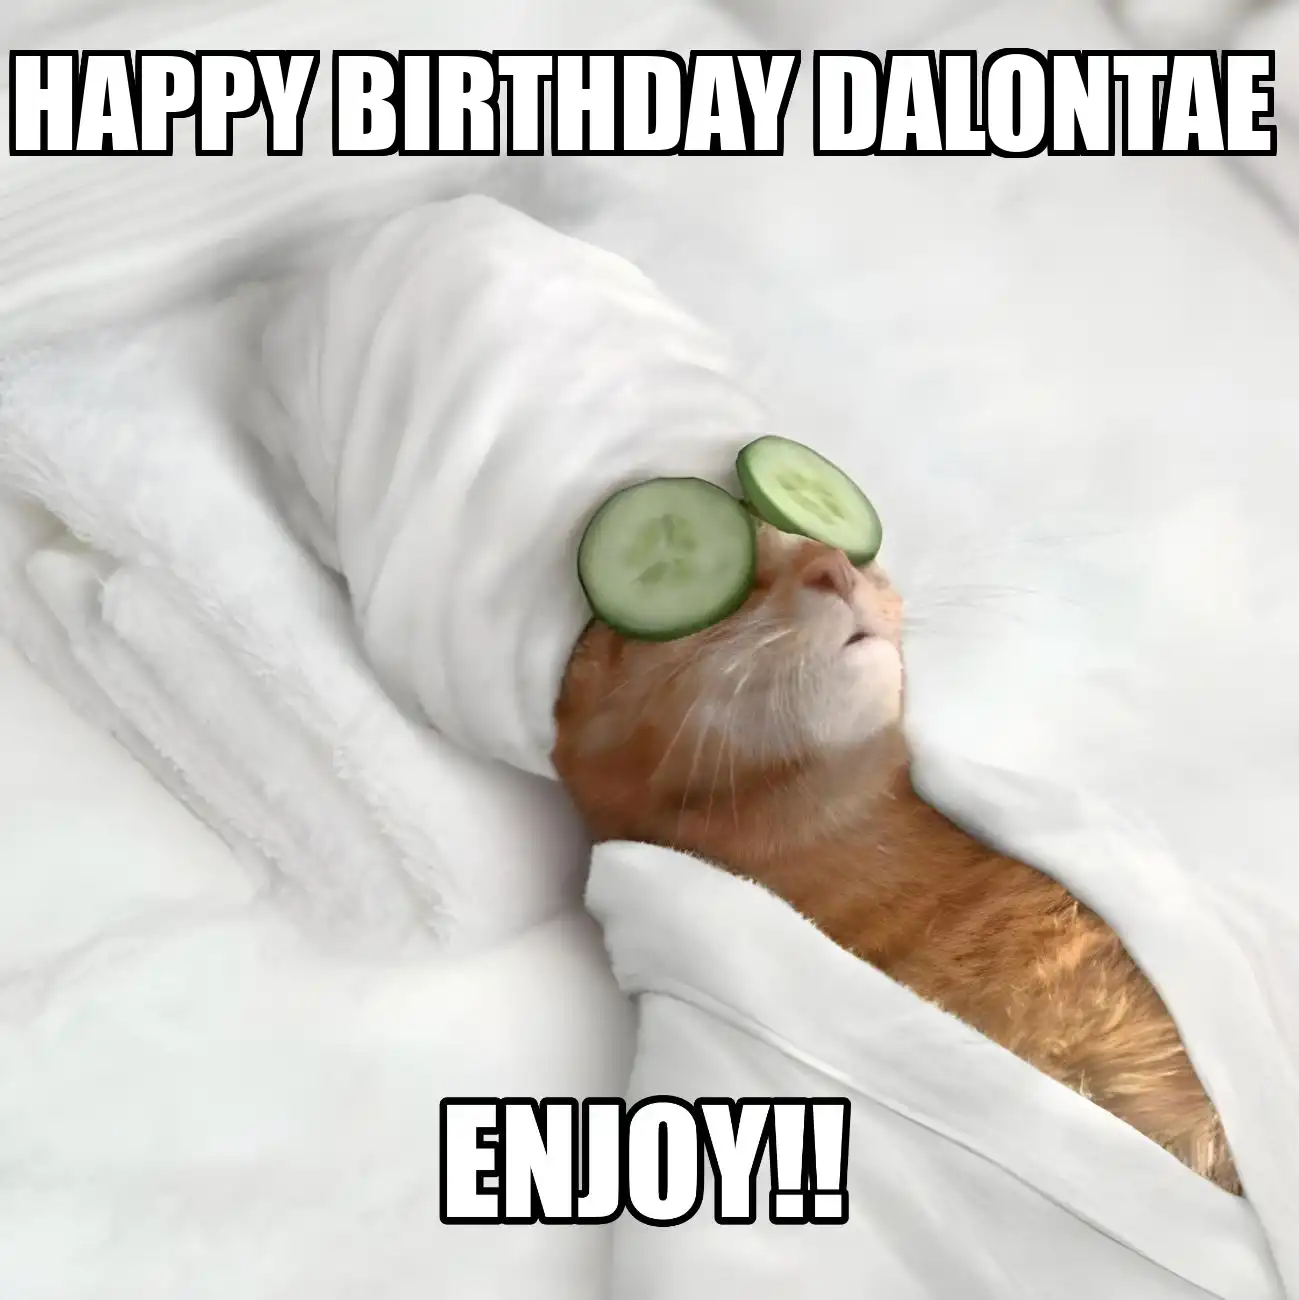 Happy Birthday Dalontae Enjoy Cat Meme